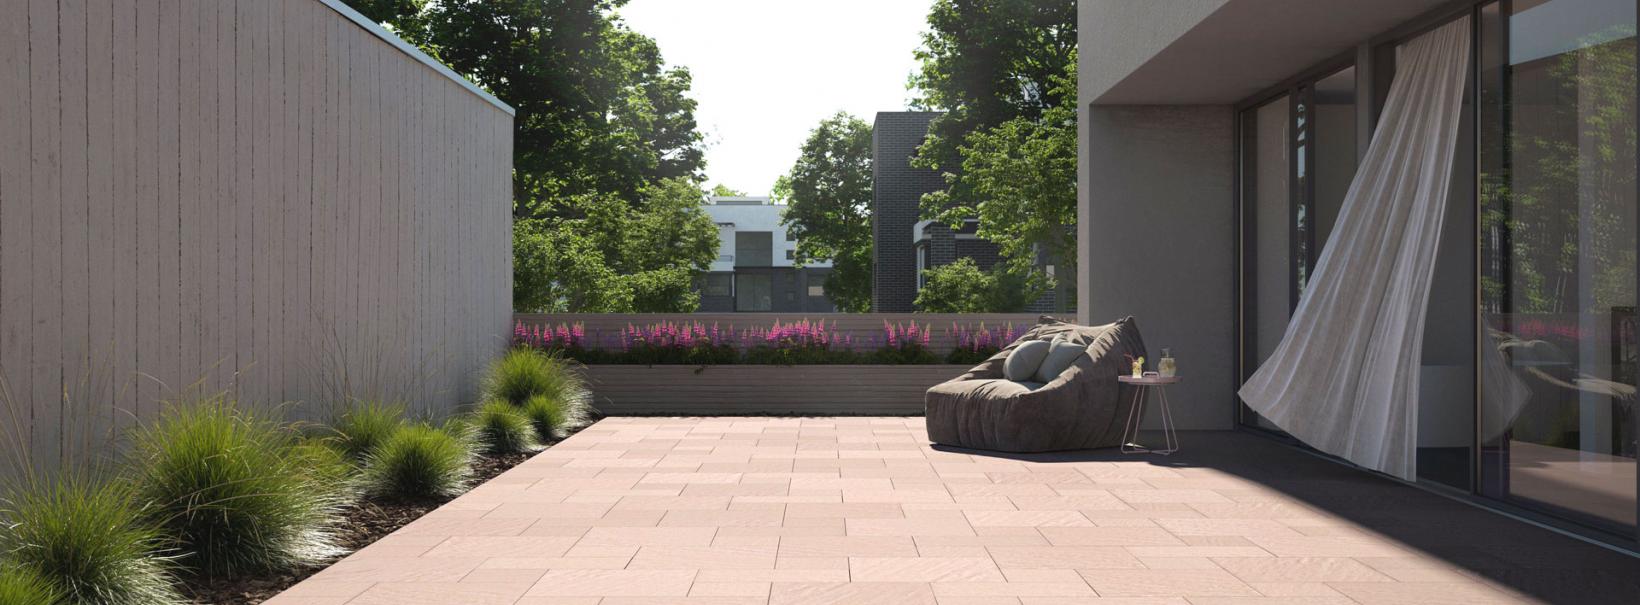 Rünz & Hoffend Living Moments Terrassenplatten sand-nuanciert Terrasse mit Sessel